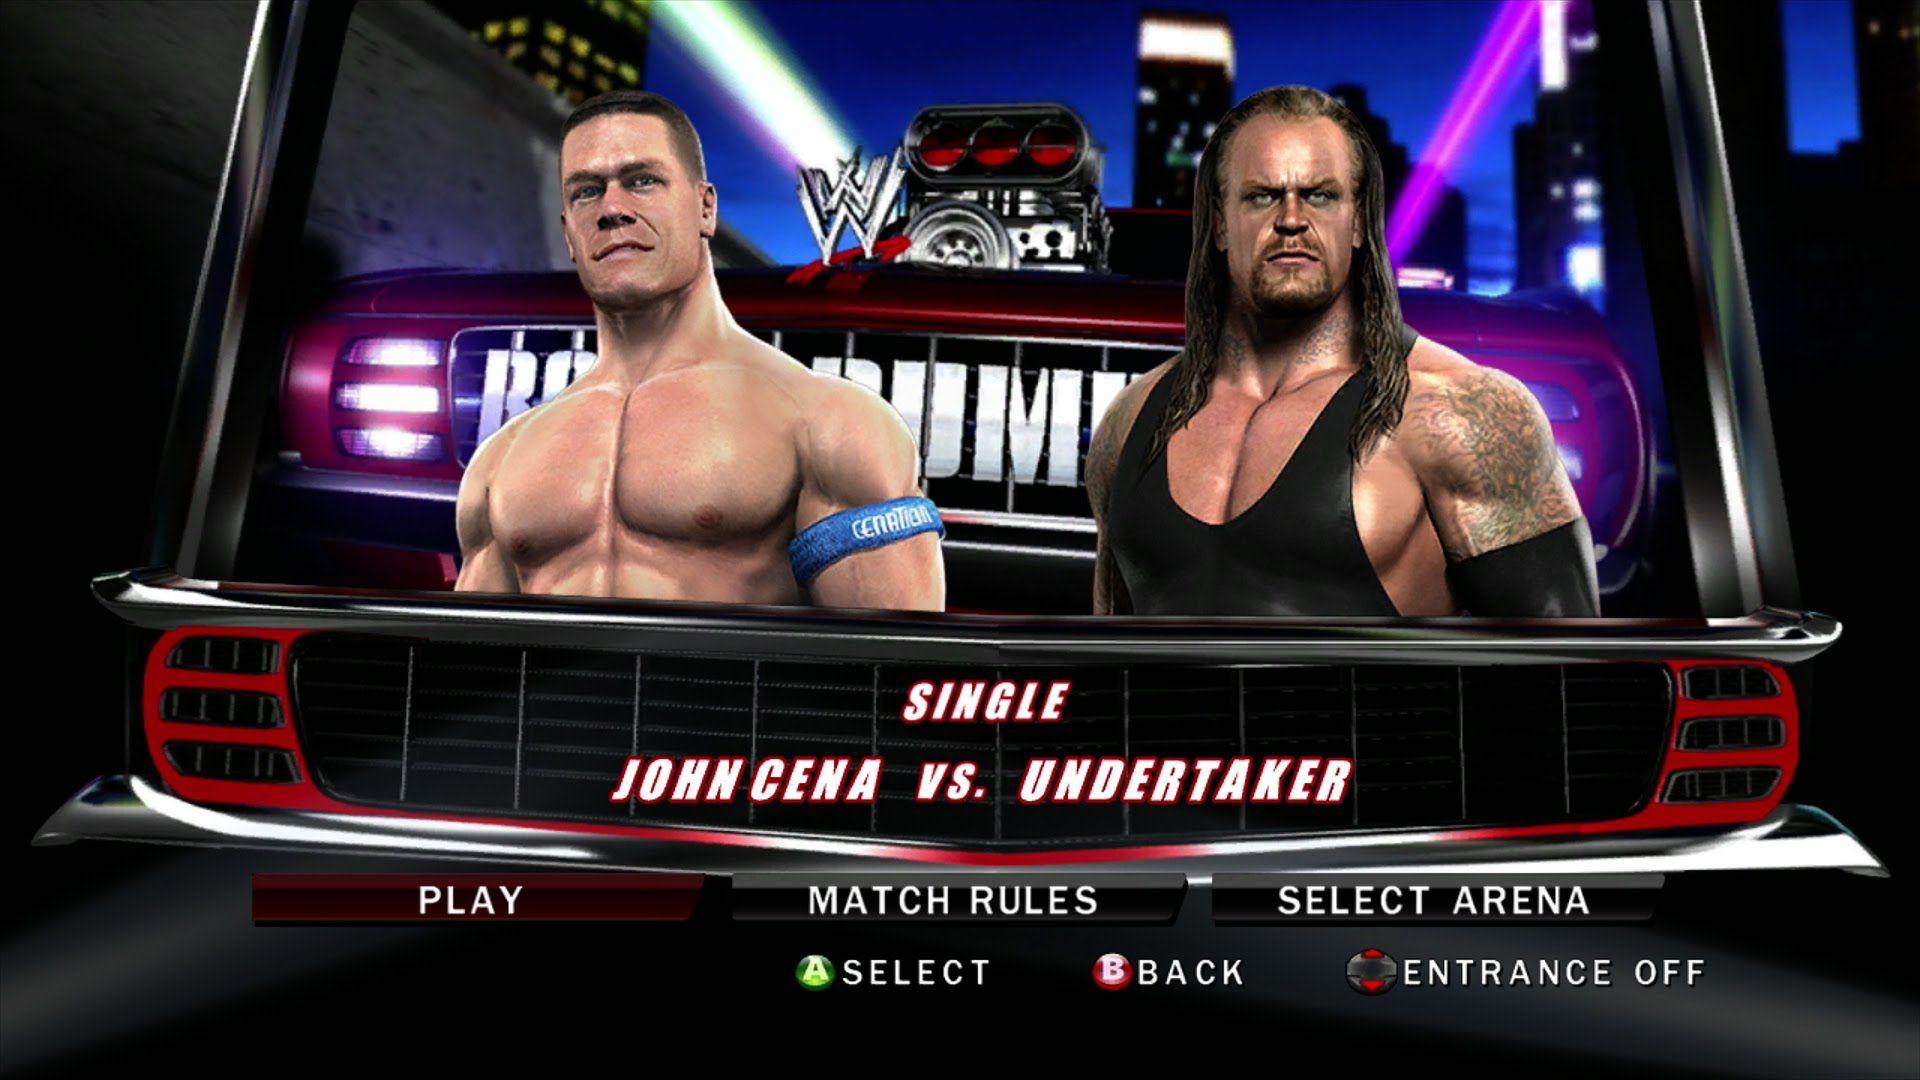 WWE Smackdown Vs Raw 2010 Cena Vs. The Undertaker